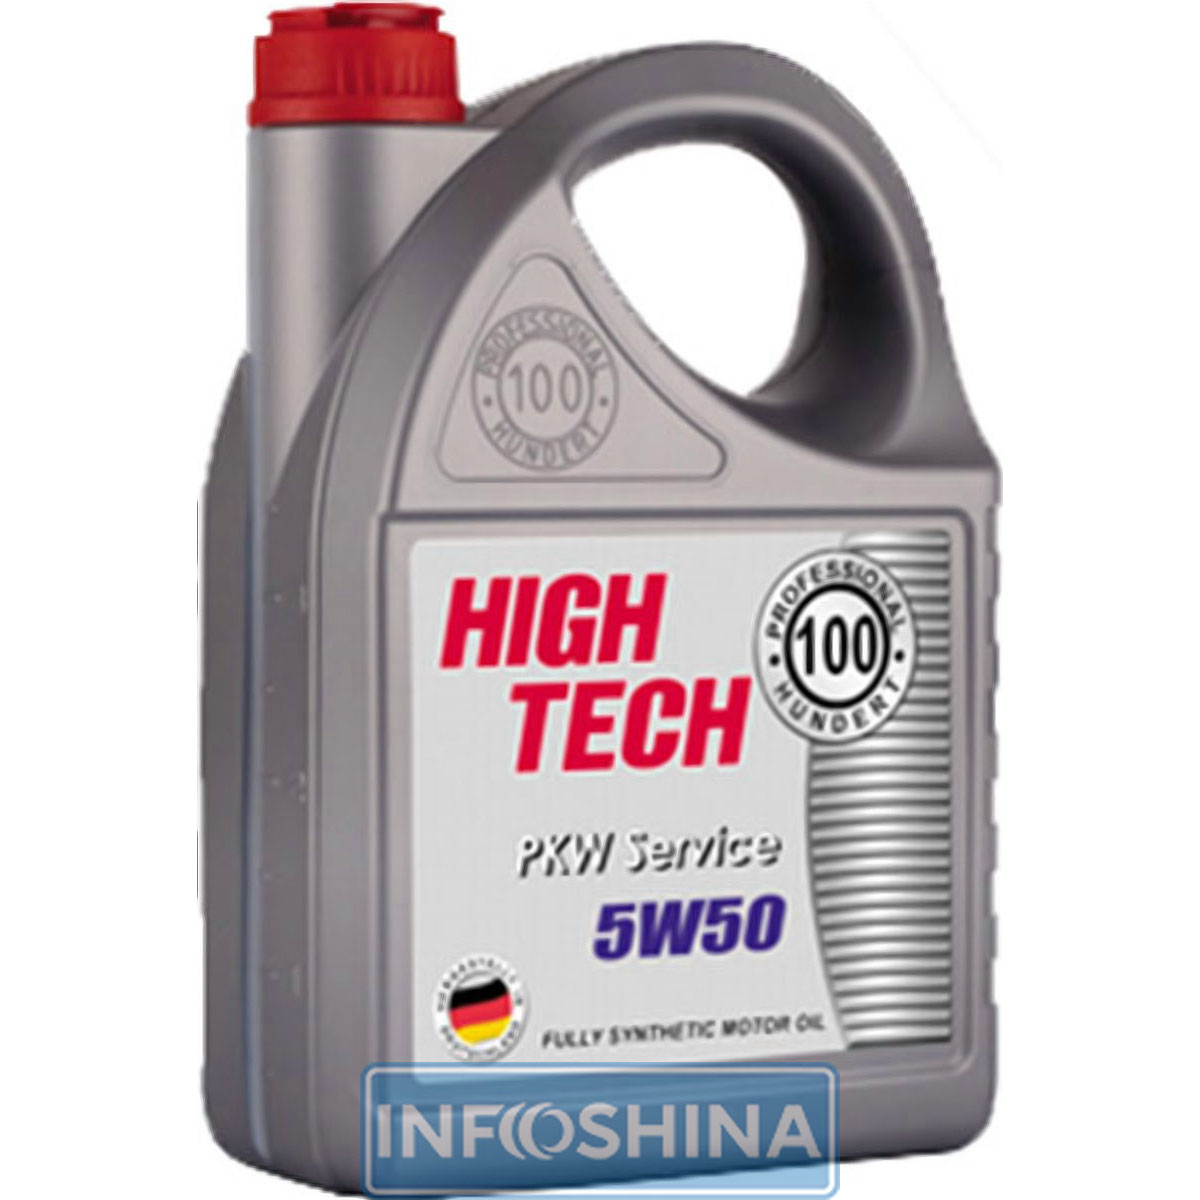 Professional Hundert High Tech 5W-50